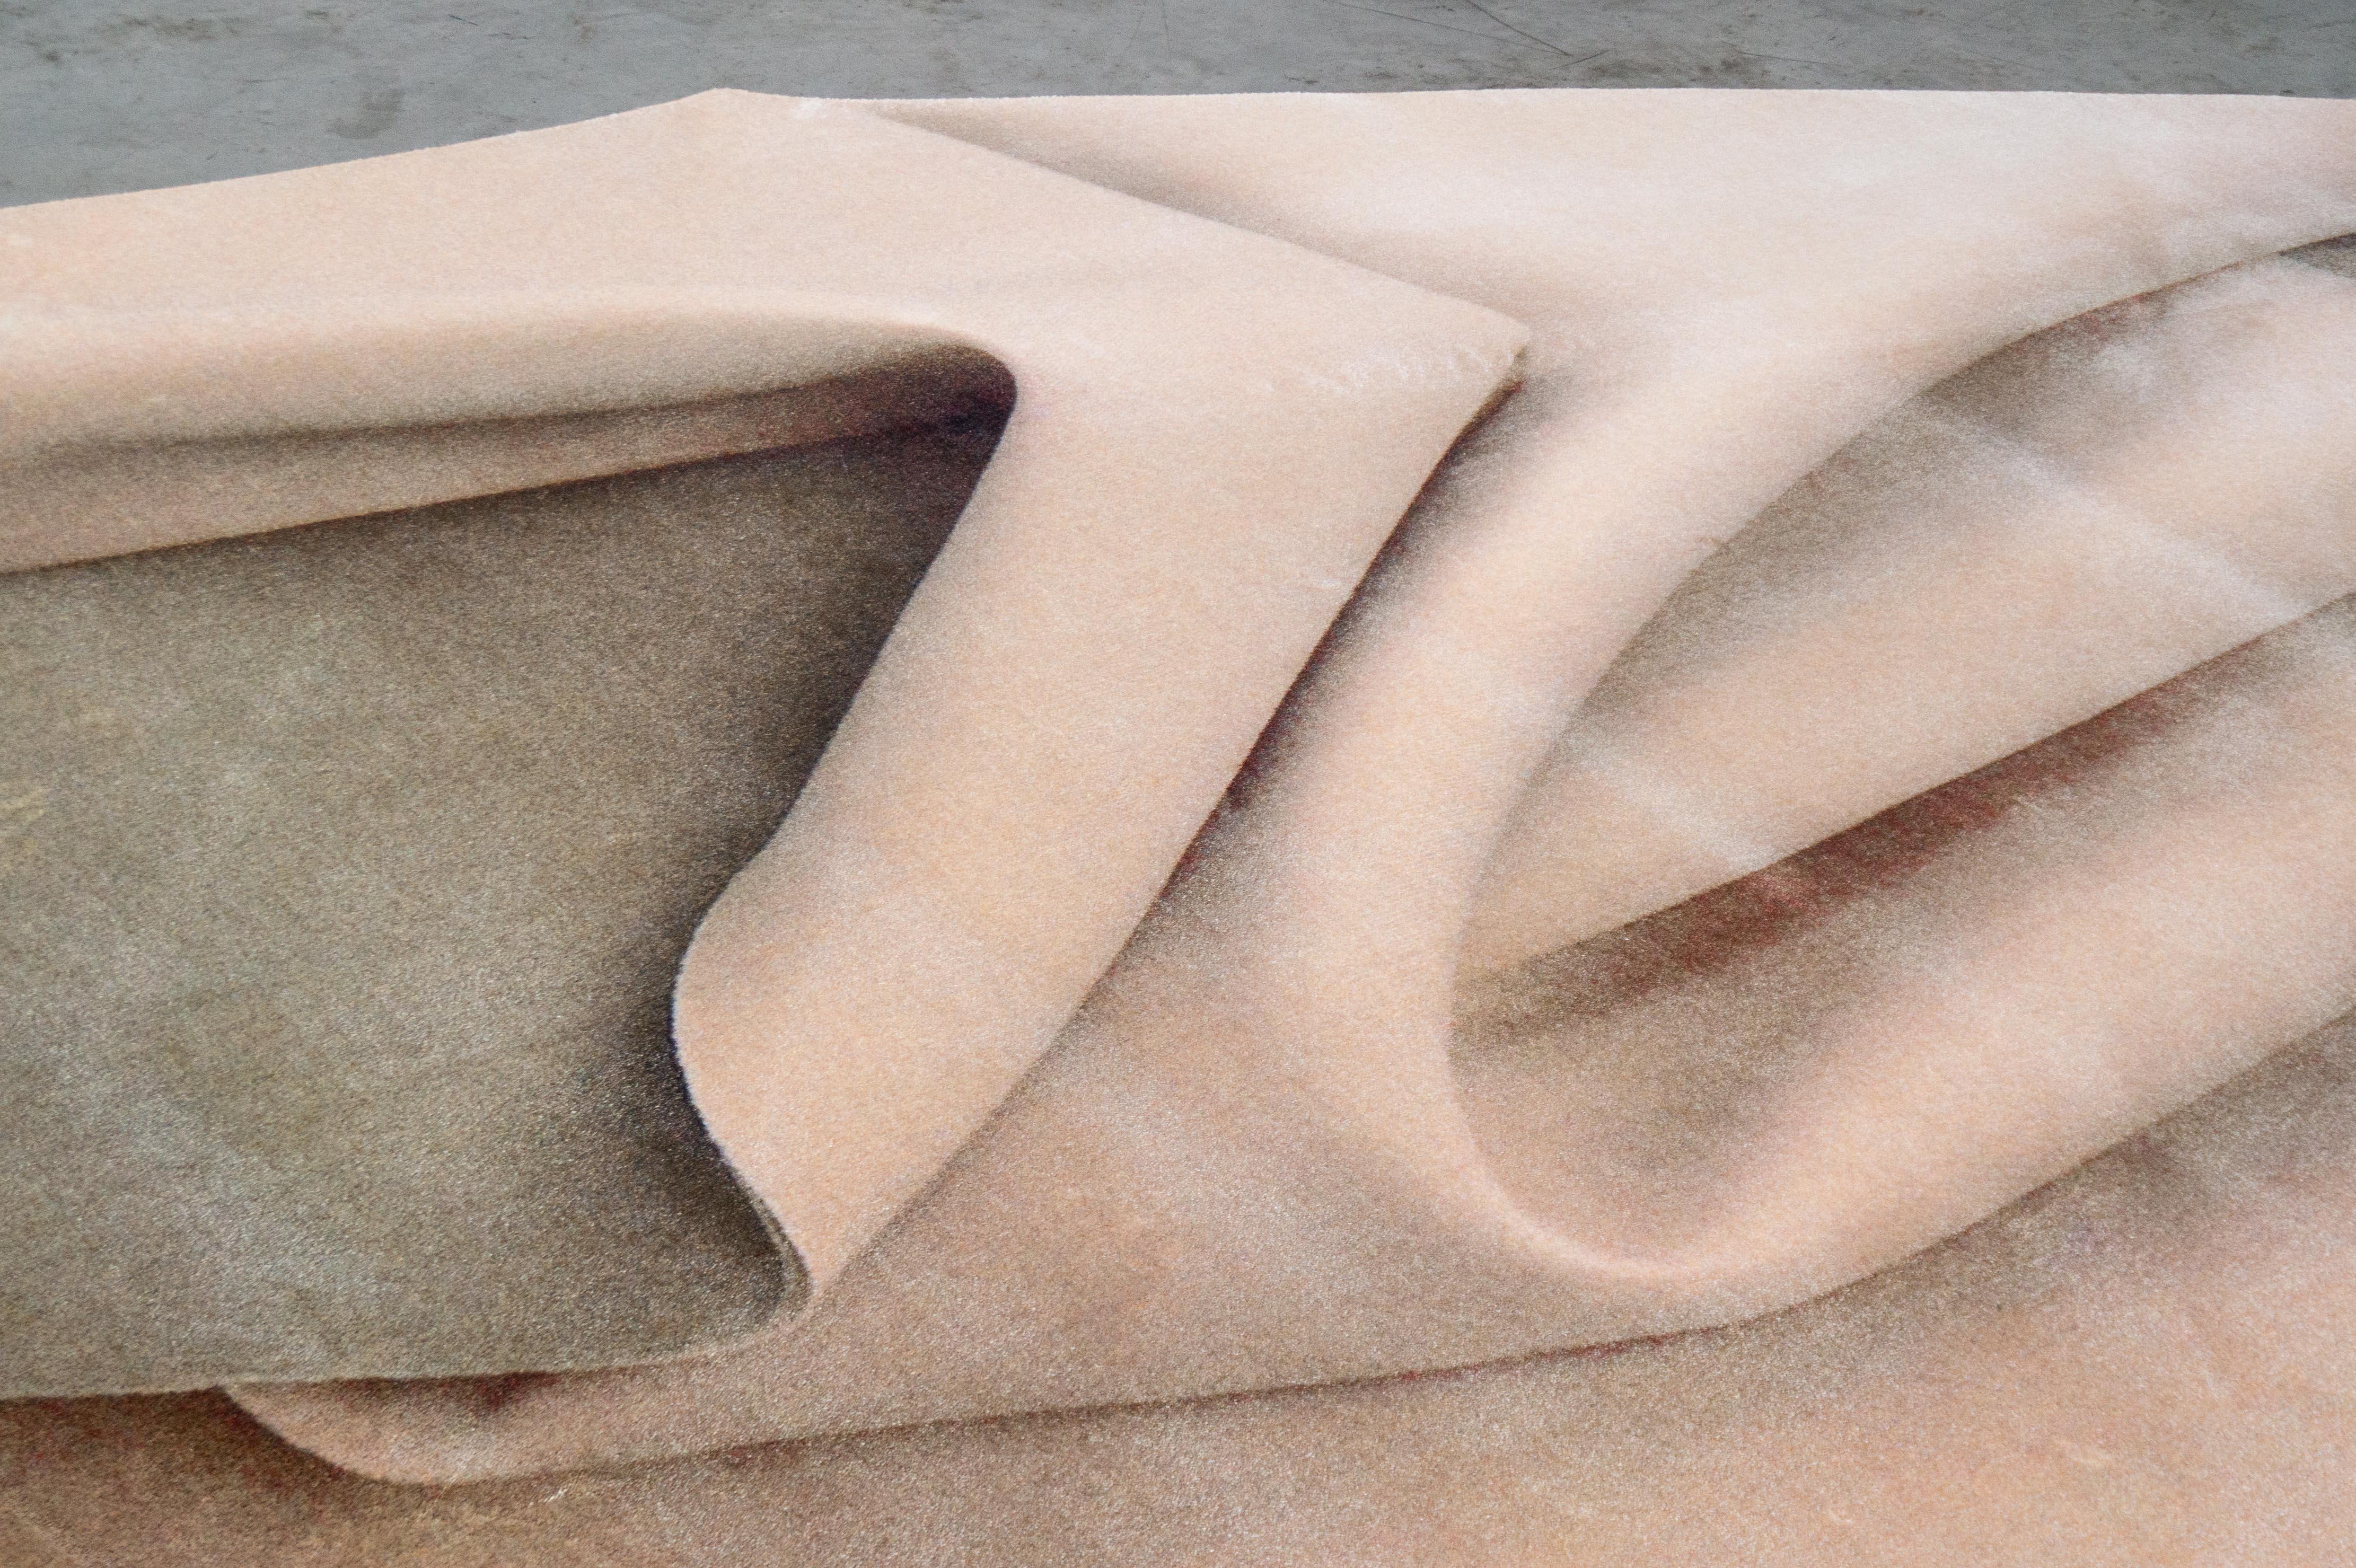 Tapis Moooi Small Nude Fold en polyamide basse densité par Celia Hadeler

Celia Hadeler est une artiste contemporaine, basée aux Pays-Bas. Son travail est fait de contradictions et de contrastes. D'origine péruvienne et allemande, Celia est le